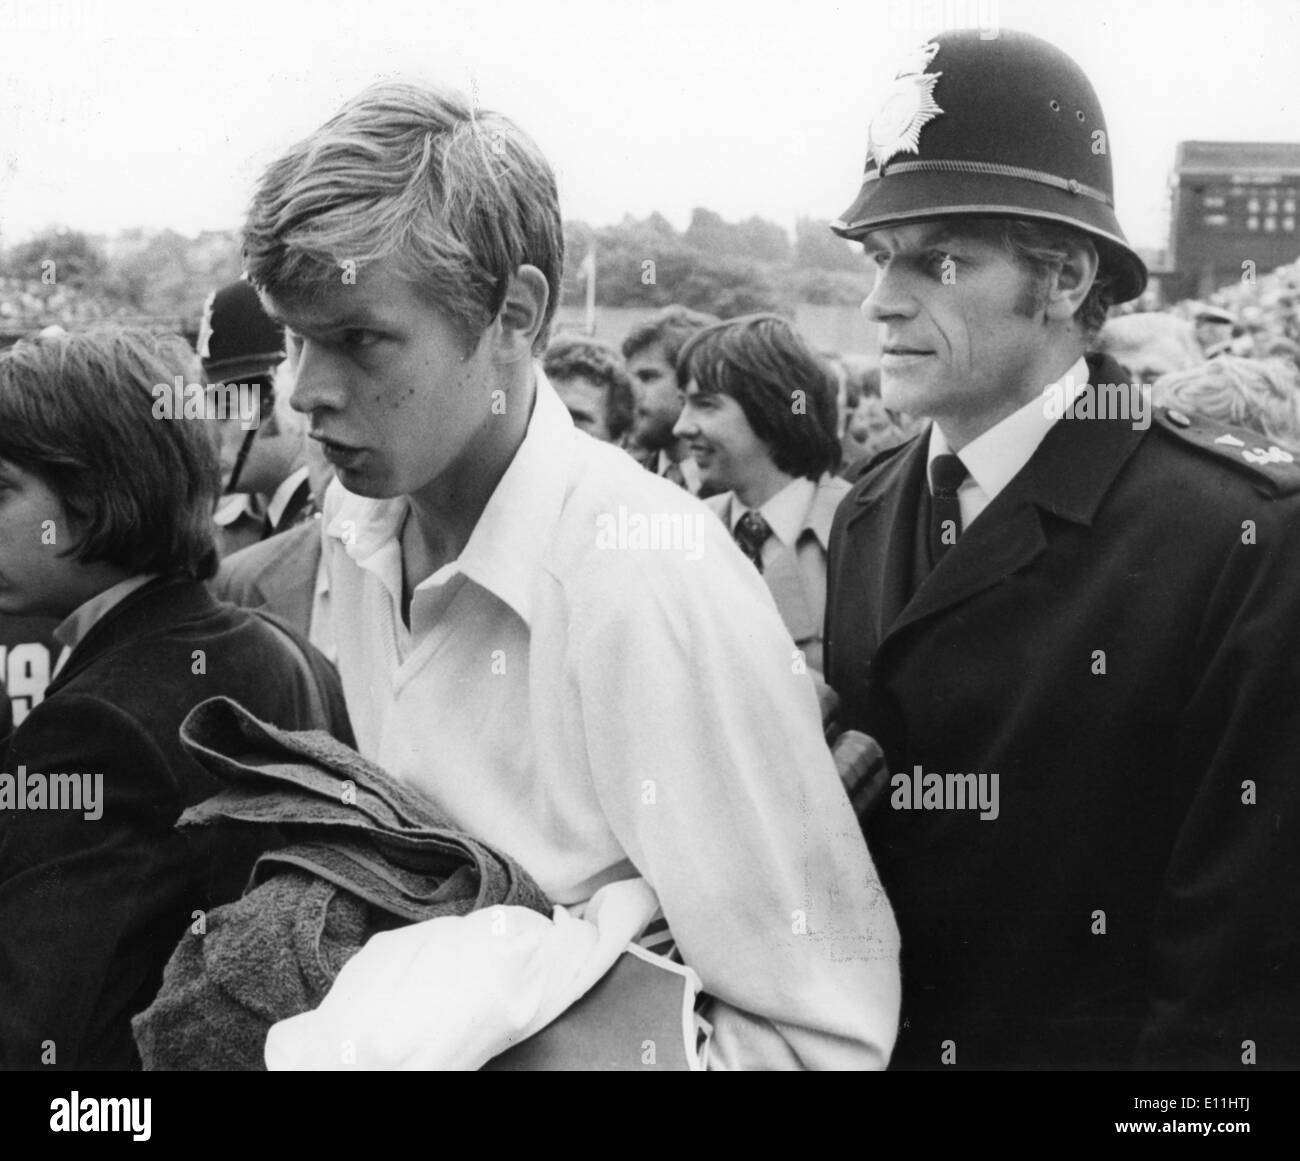 Juin 26, 1978 - Londres, Angleterre, Royaume-Uni - Tennis Player BUSTER MOTTROM étant escorté par un policier après avoir battu Palm Douglas à Wimbledon. Banque D'Images